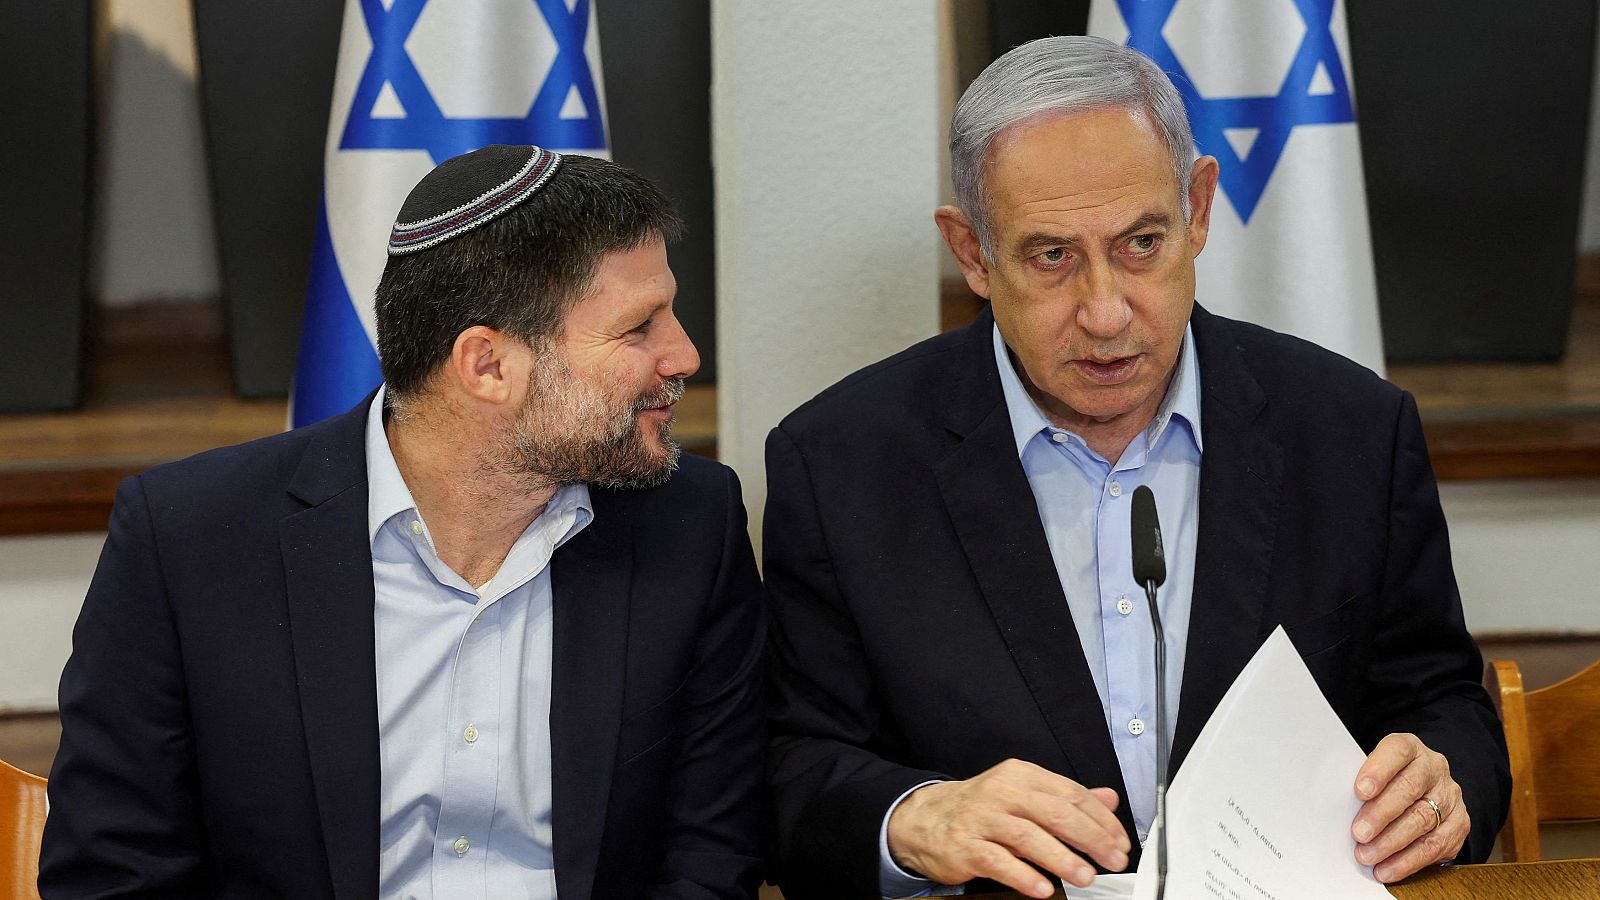 Netanyahu asegura que Israel luchará "con uñas y dientes" tras las advertencias de Biden sobre Ráfah